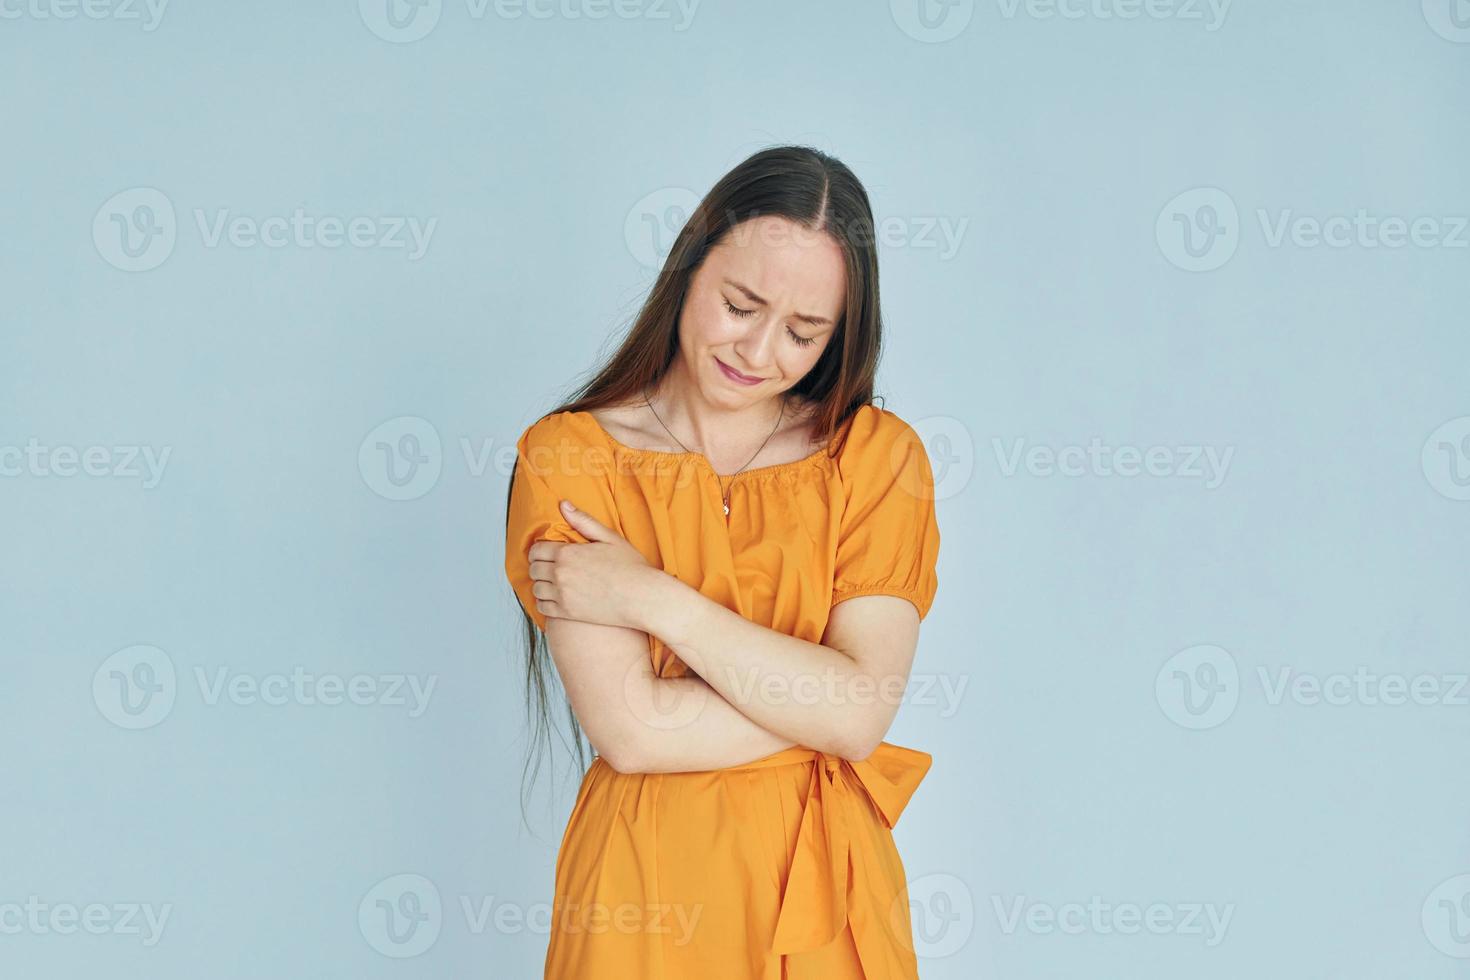 jeune femme en vêtements décontractés debout à l'intérieur dans le studio photo